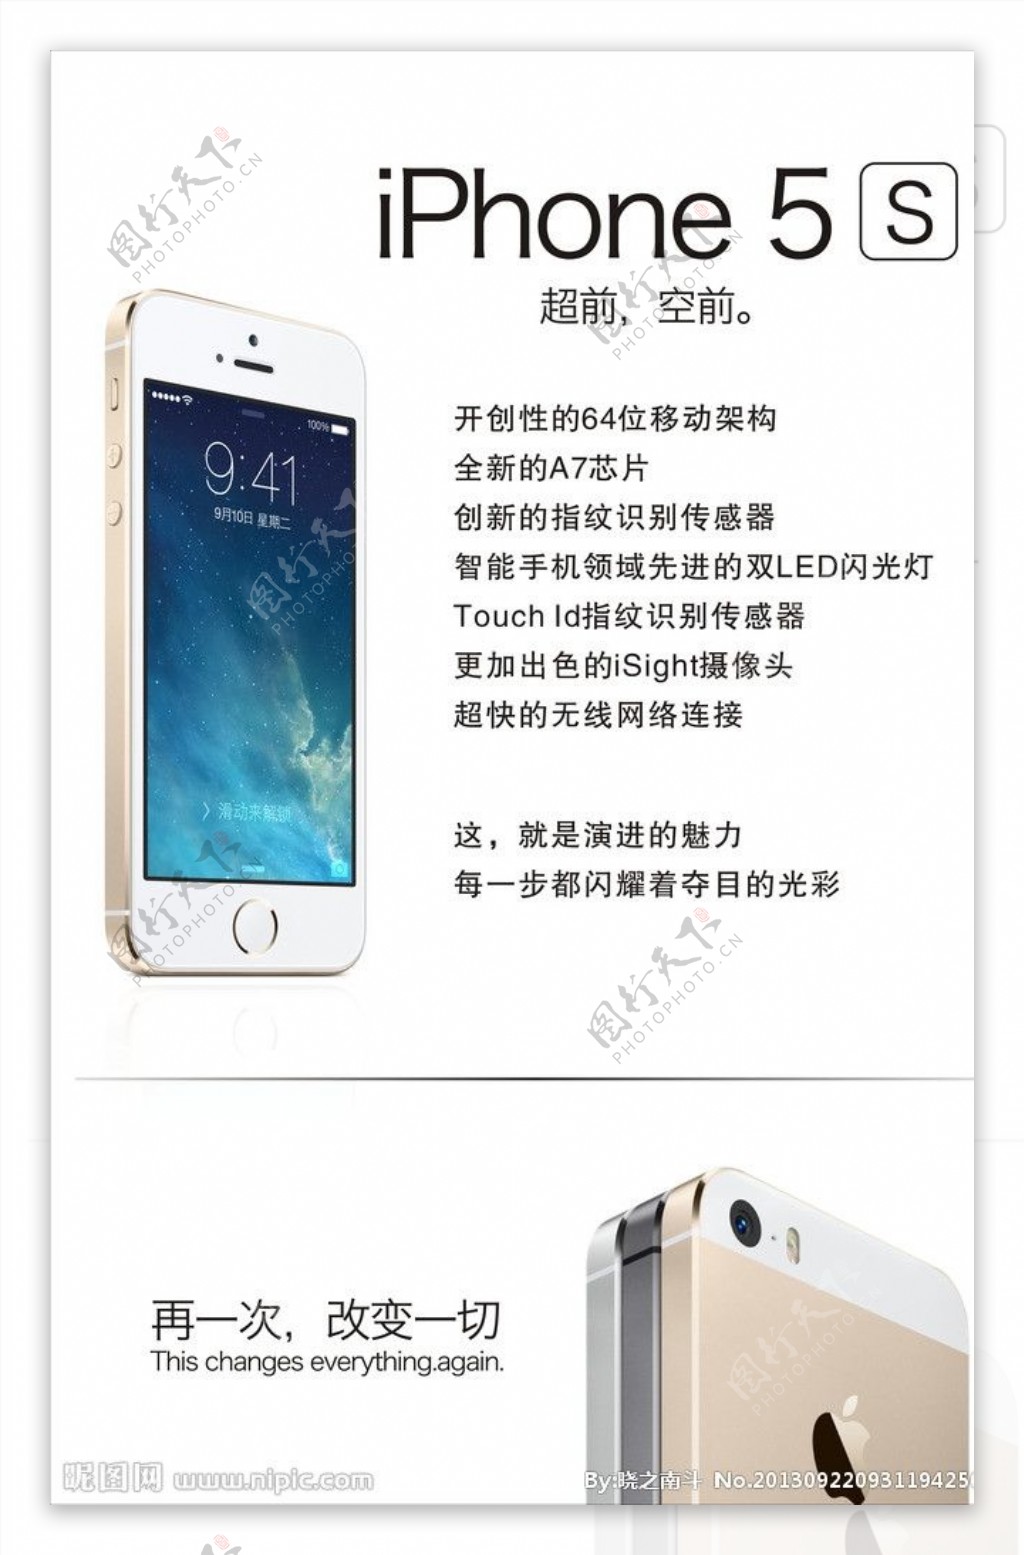 夏昆冈作品 - Apple 苹果 iPhone 5S 智能手机拍摄体验报告 [Soomal]